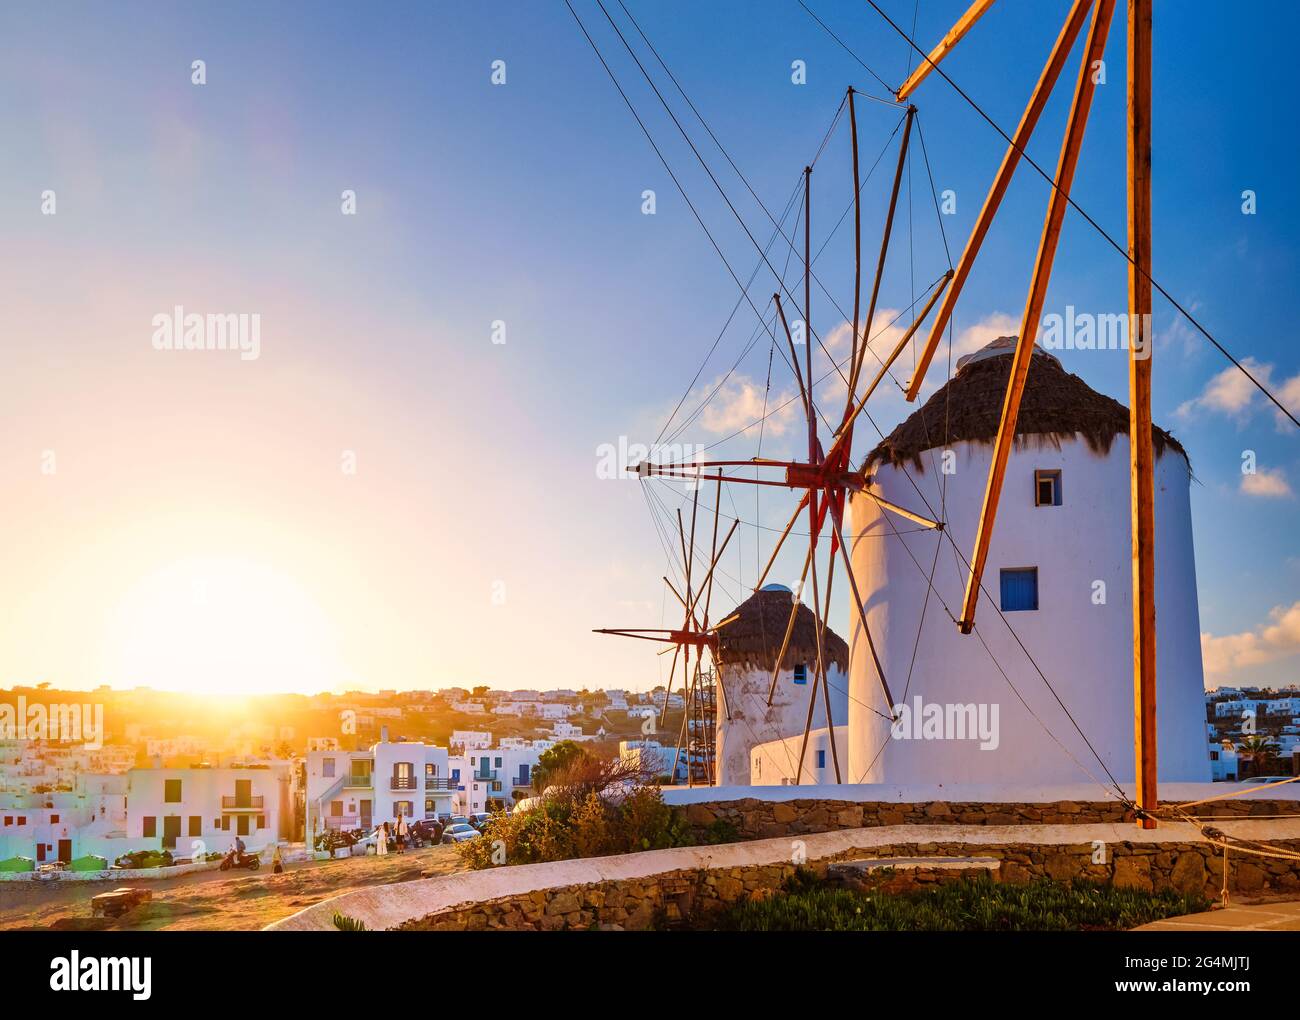 Berühmte Touristenattraktion von Mykonos, Griechenland. Traditionelle weißgetünchte Windmühlen in Reihe gegen die Sonne. Sommer, Sonnenaufgang, Reiseziel, ikonische Aussicht. Stockfoto